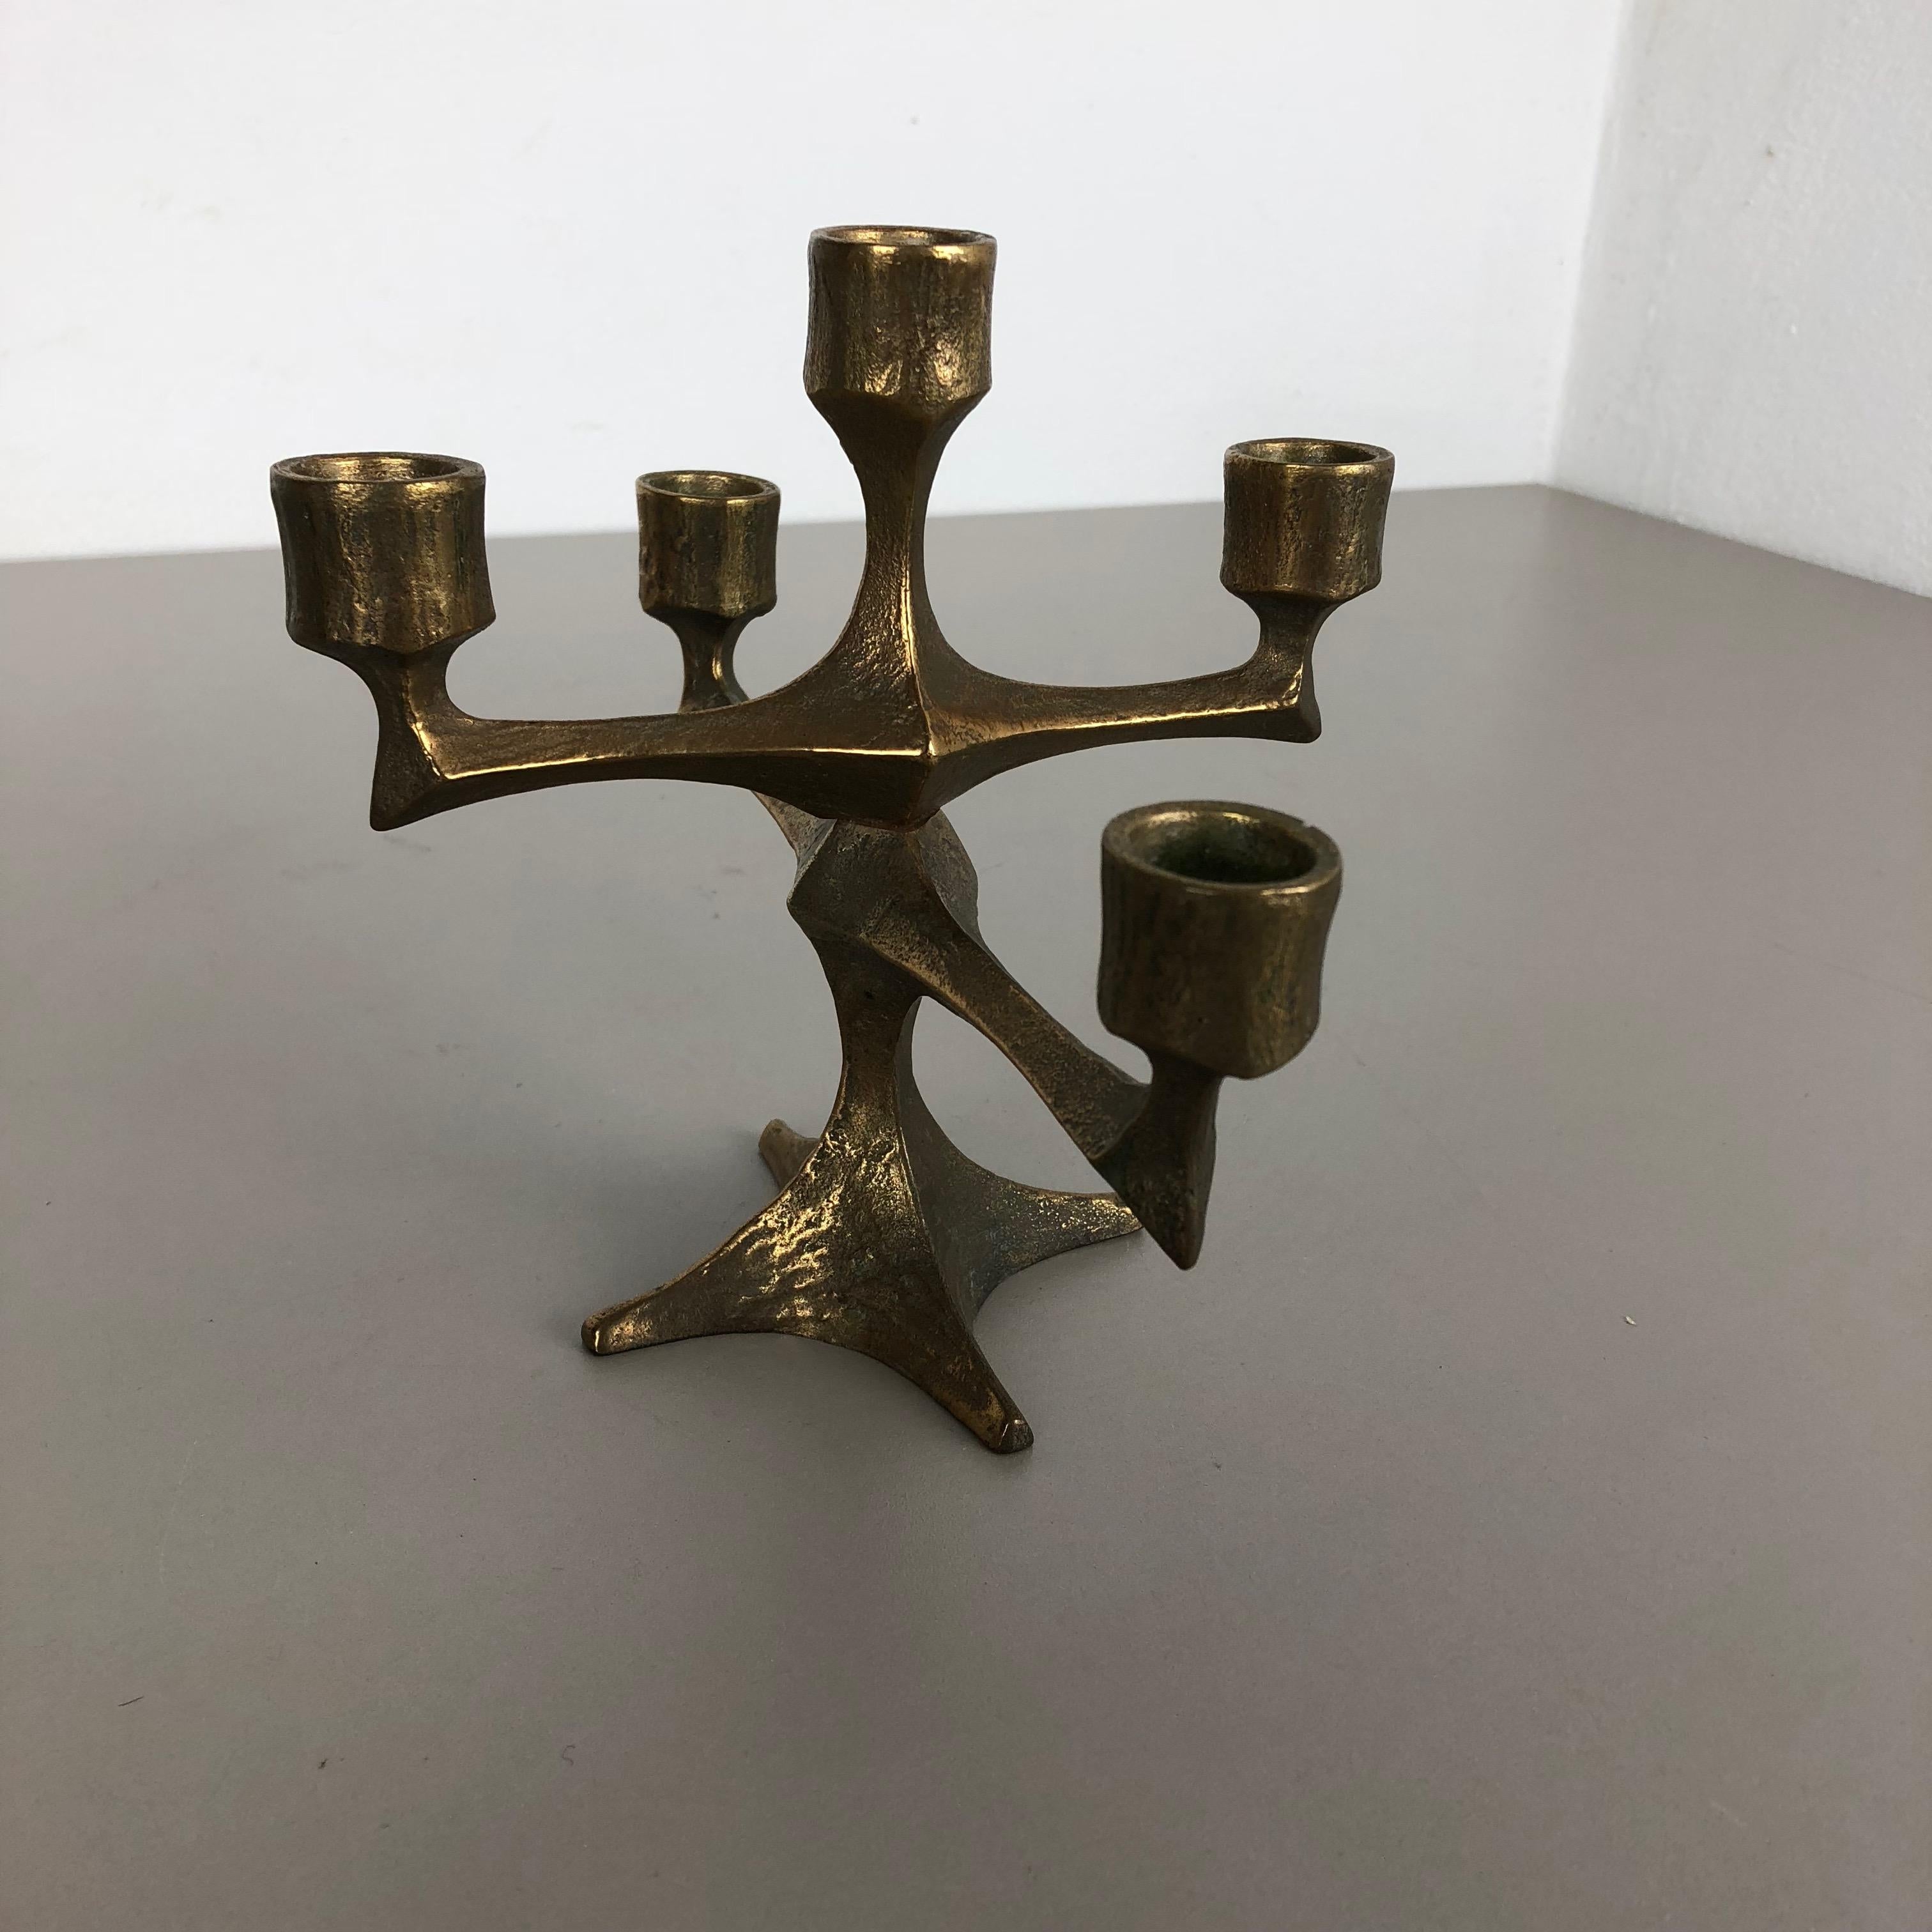 German Modernist Vintage Sculptural Brutalist Bronze Metal Candleholder, France, 1970s